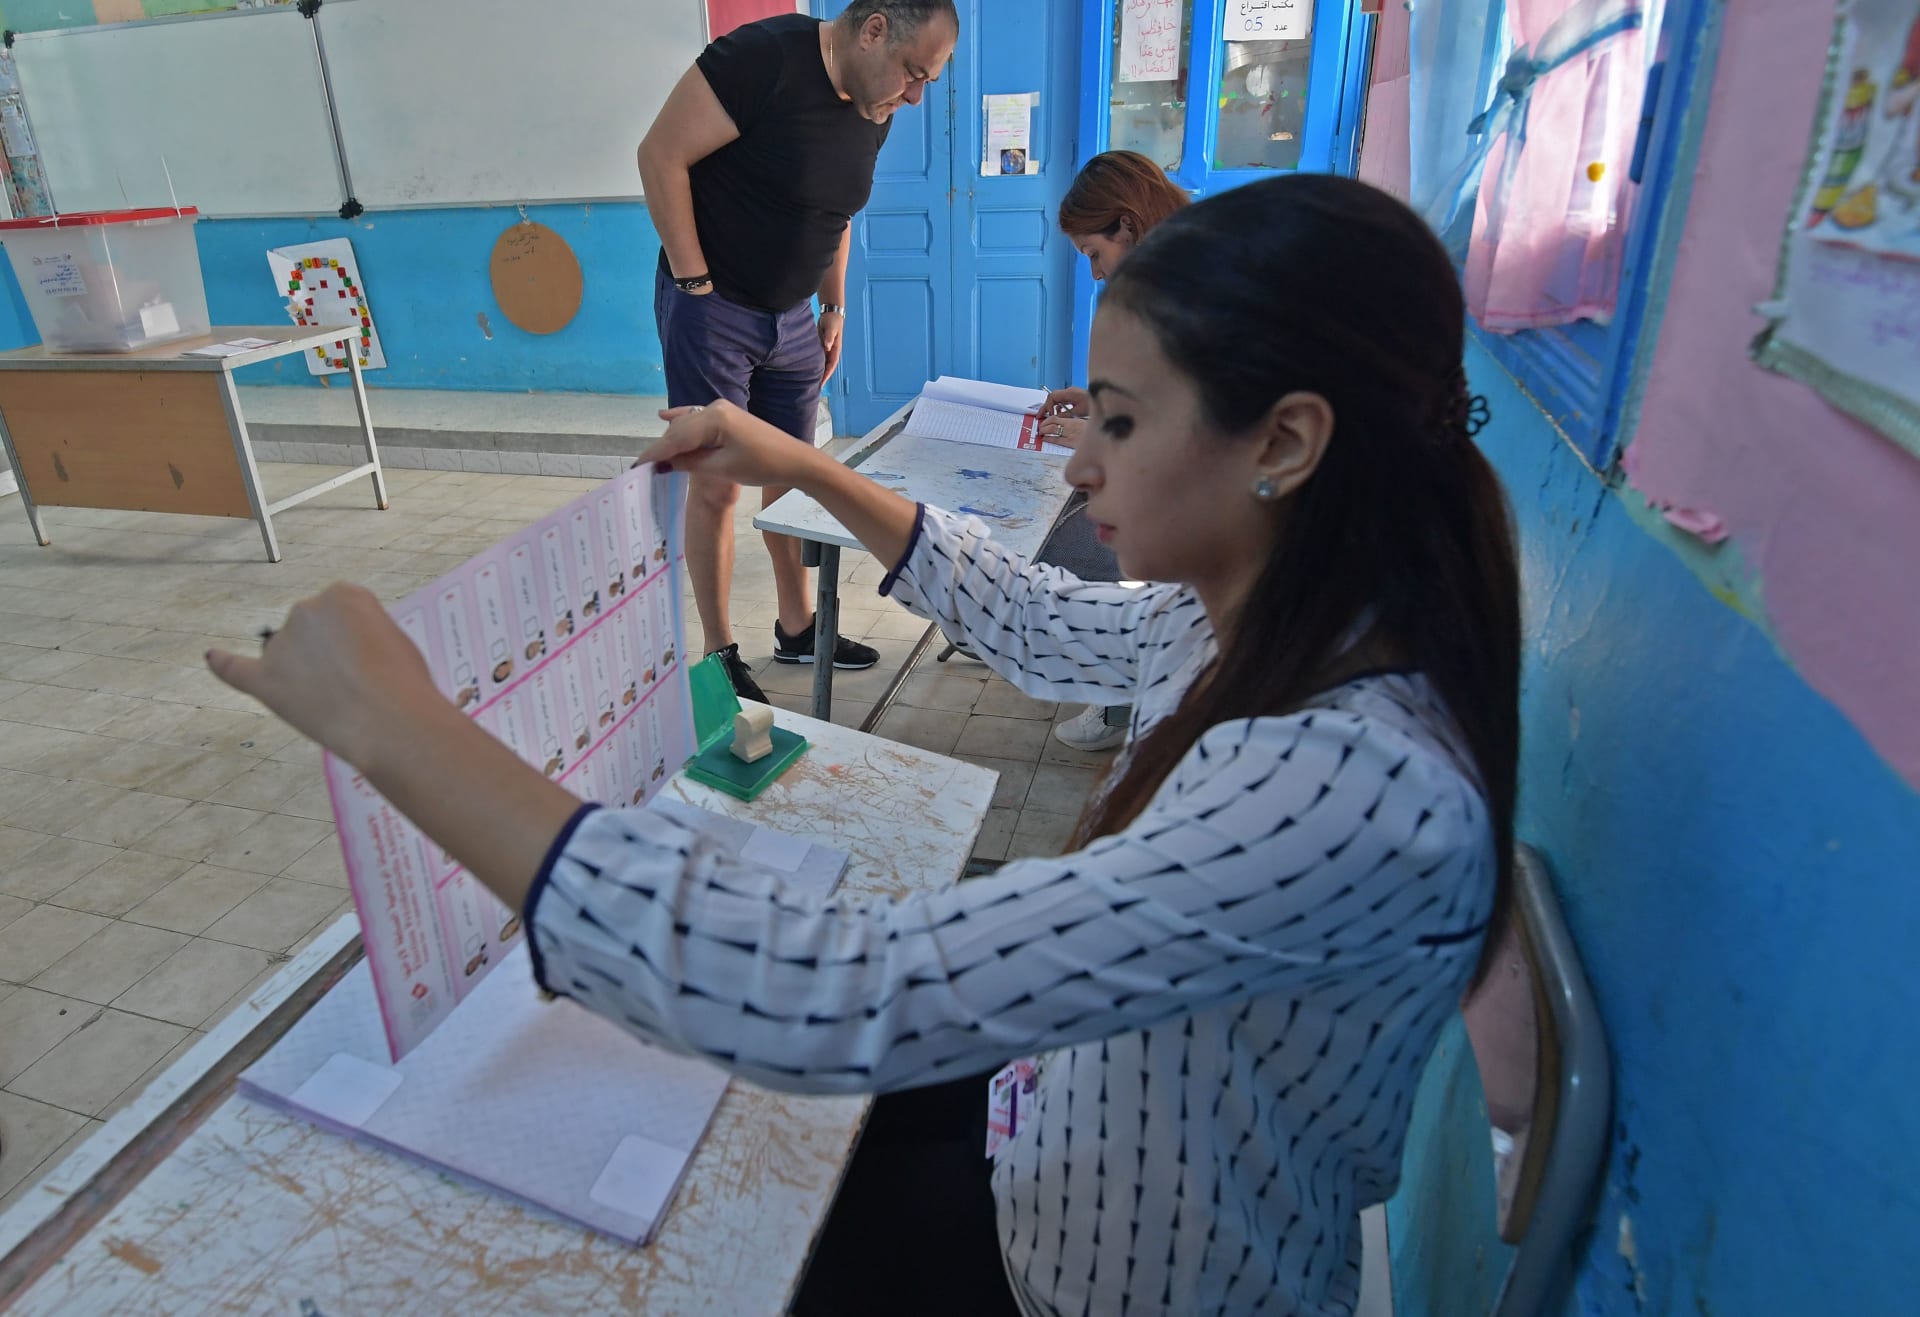 بالصور.. التونسيون يدلون بأصواتهم لاختيار رئيس جديد للبلاد 